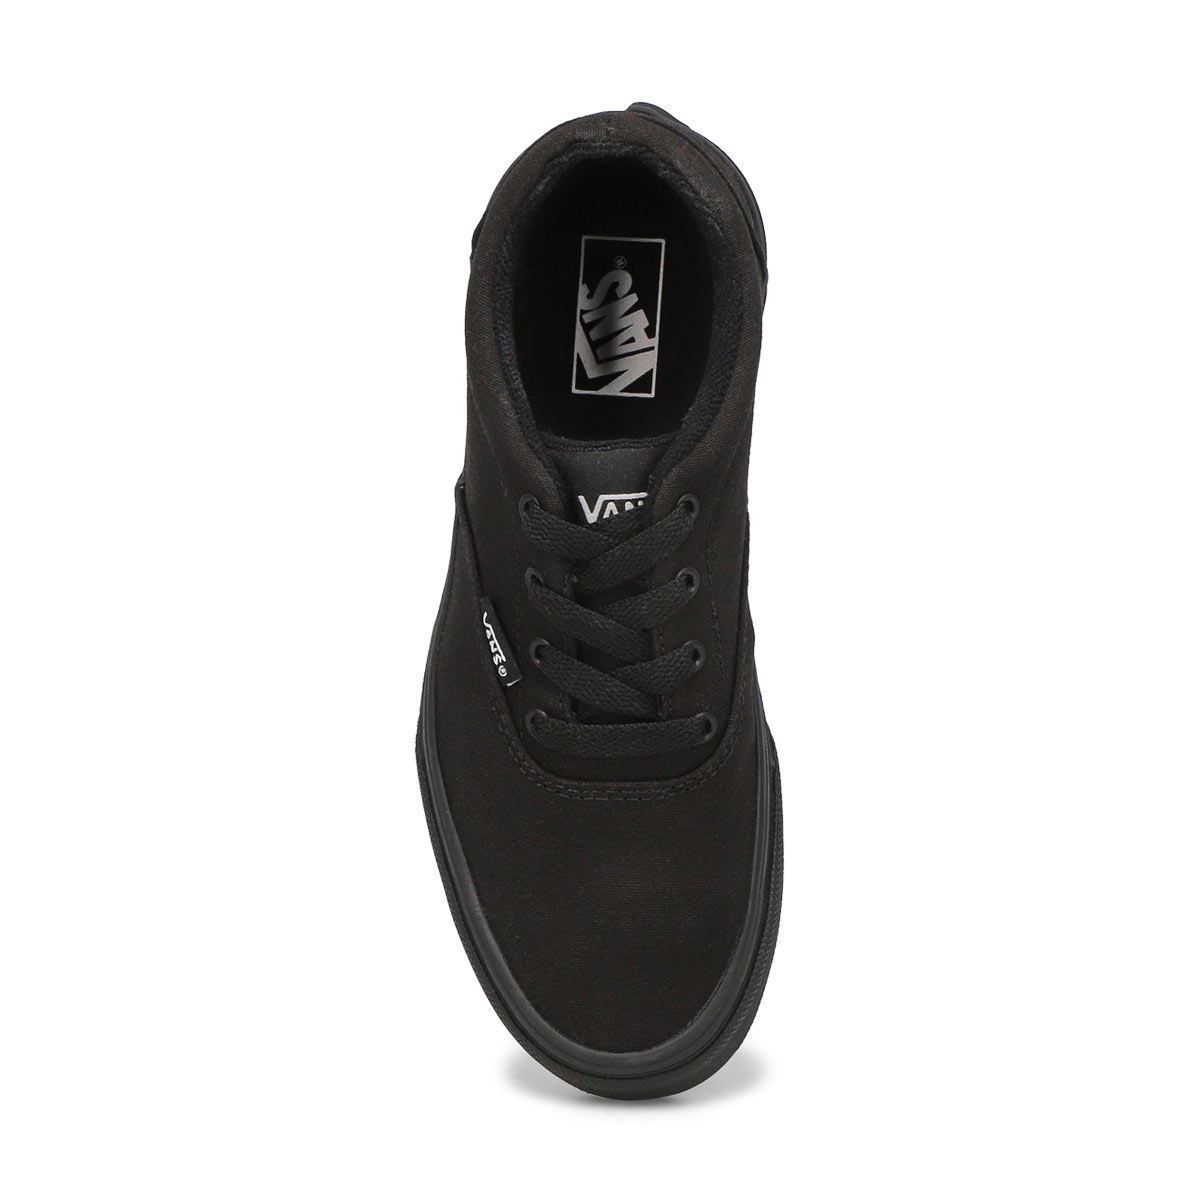 Kids' Doheny Sneaker - Black/Black